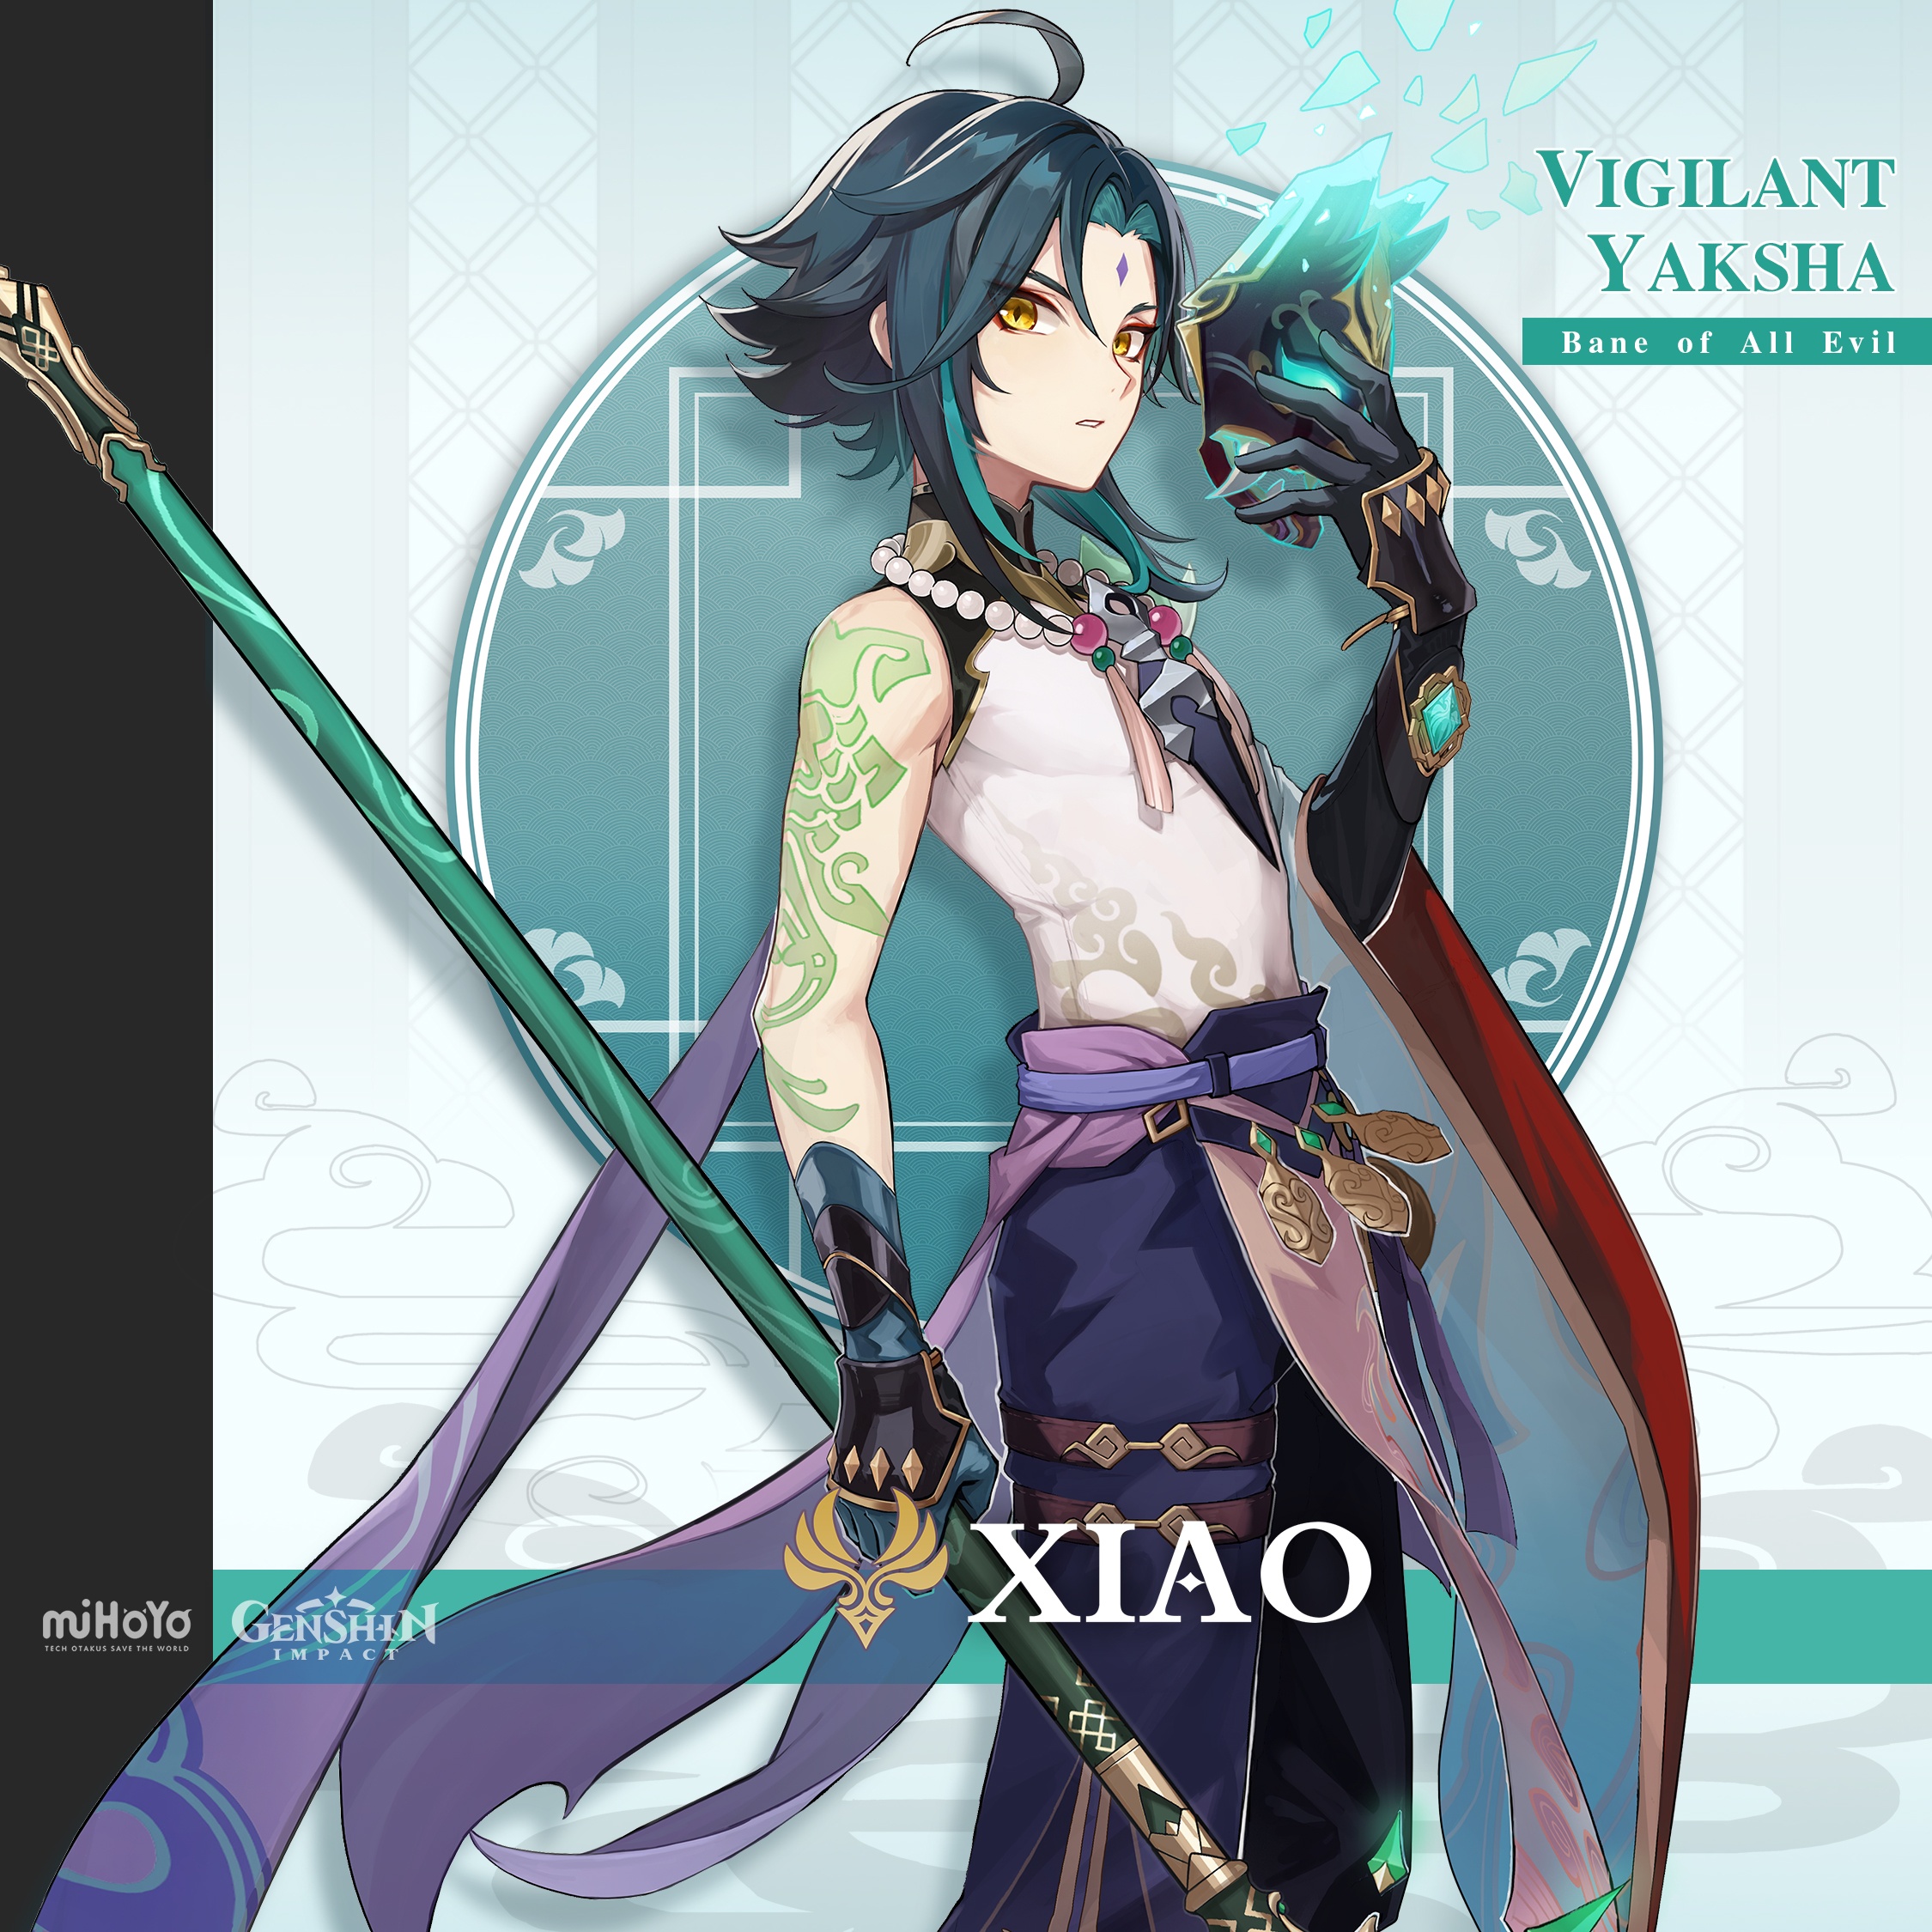 Actualización 1.3 para Genshin Impact - Vista Previa a Xiao, Vigilante Yaksha